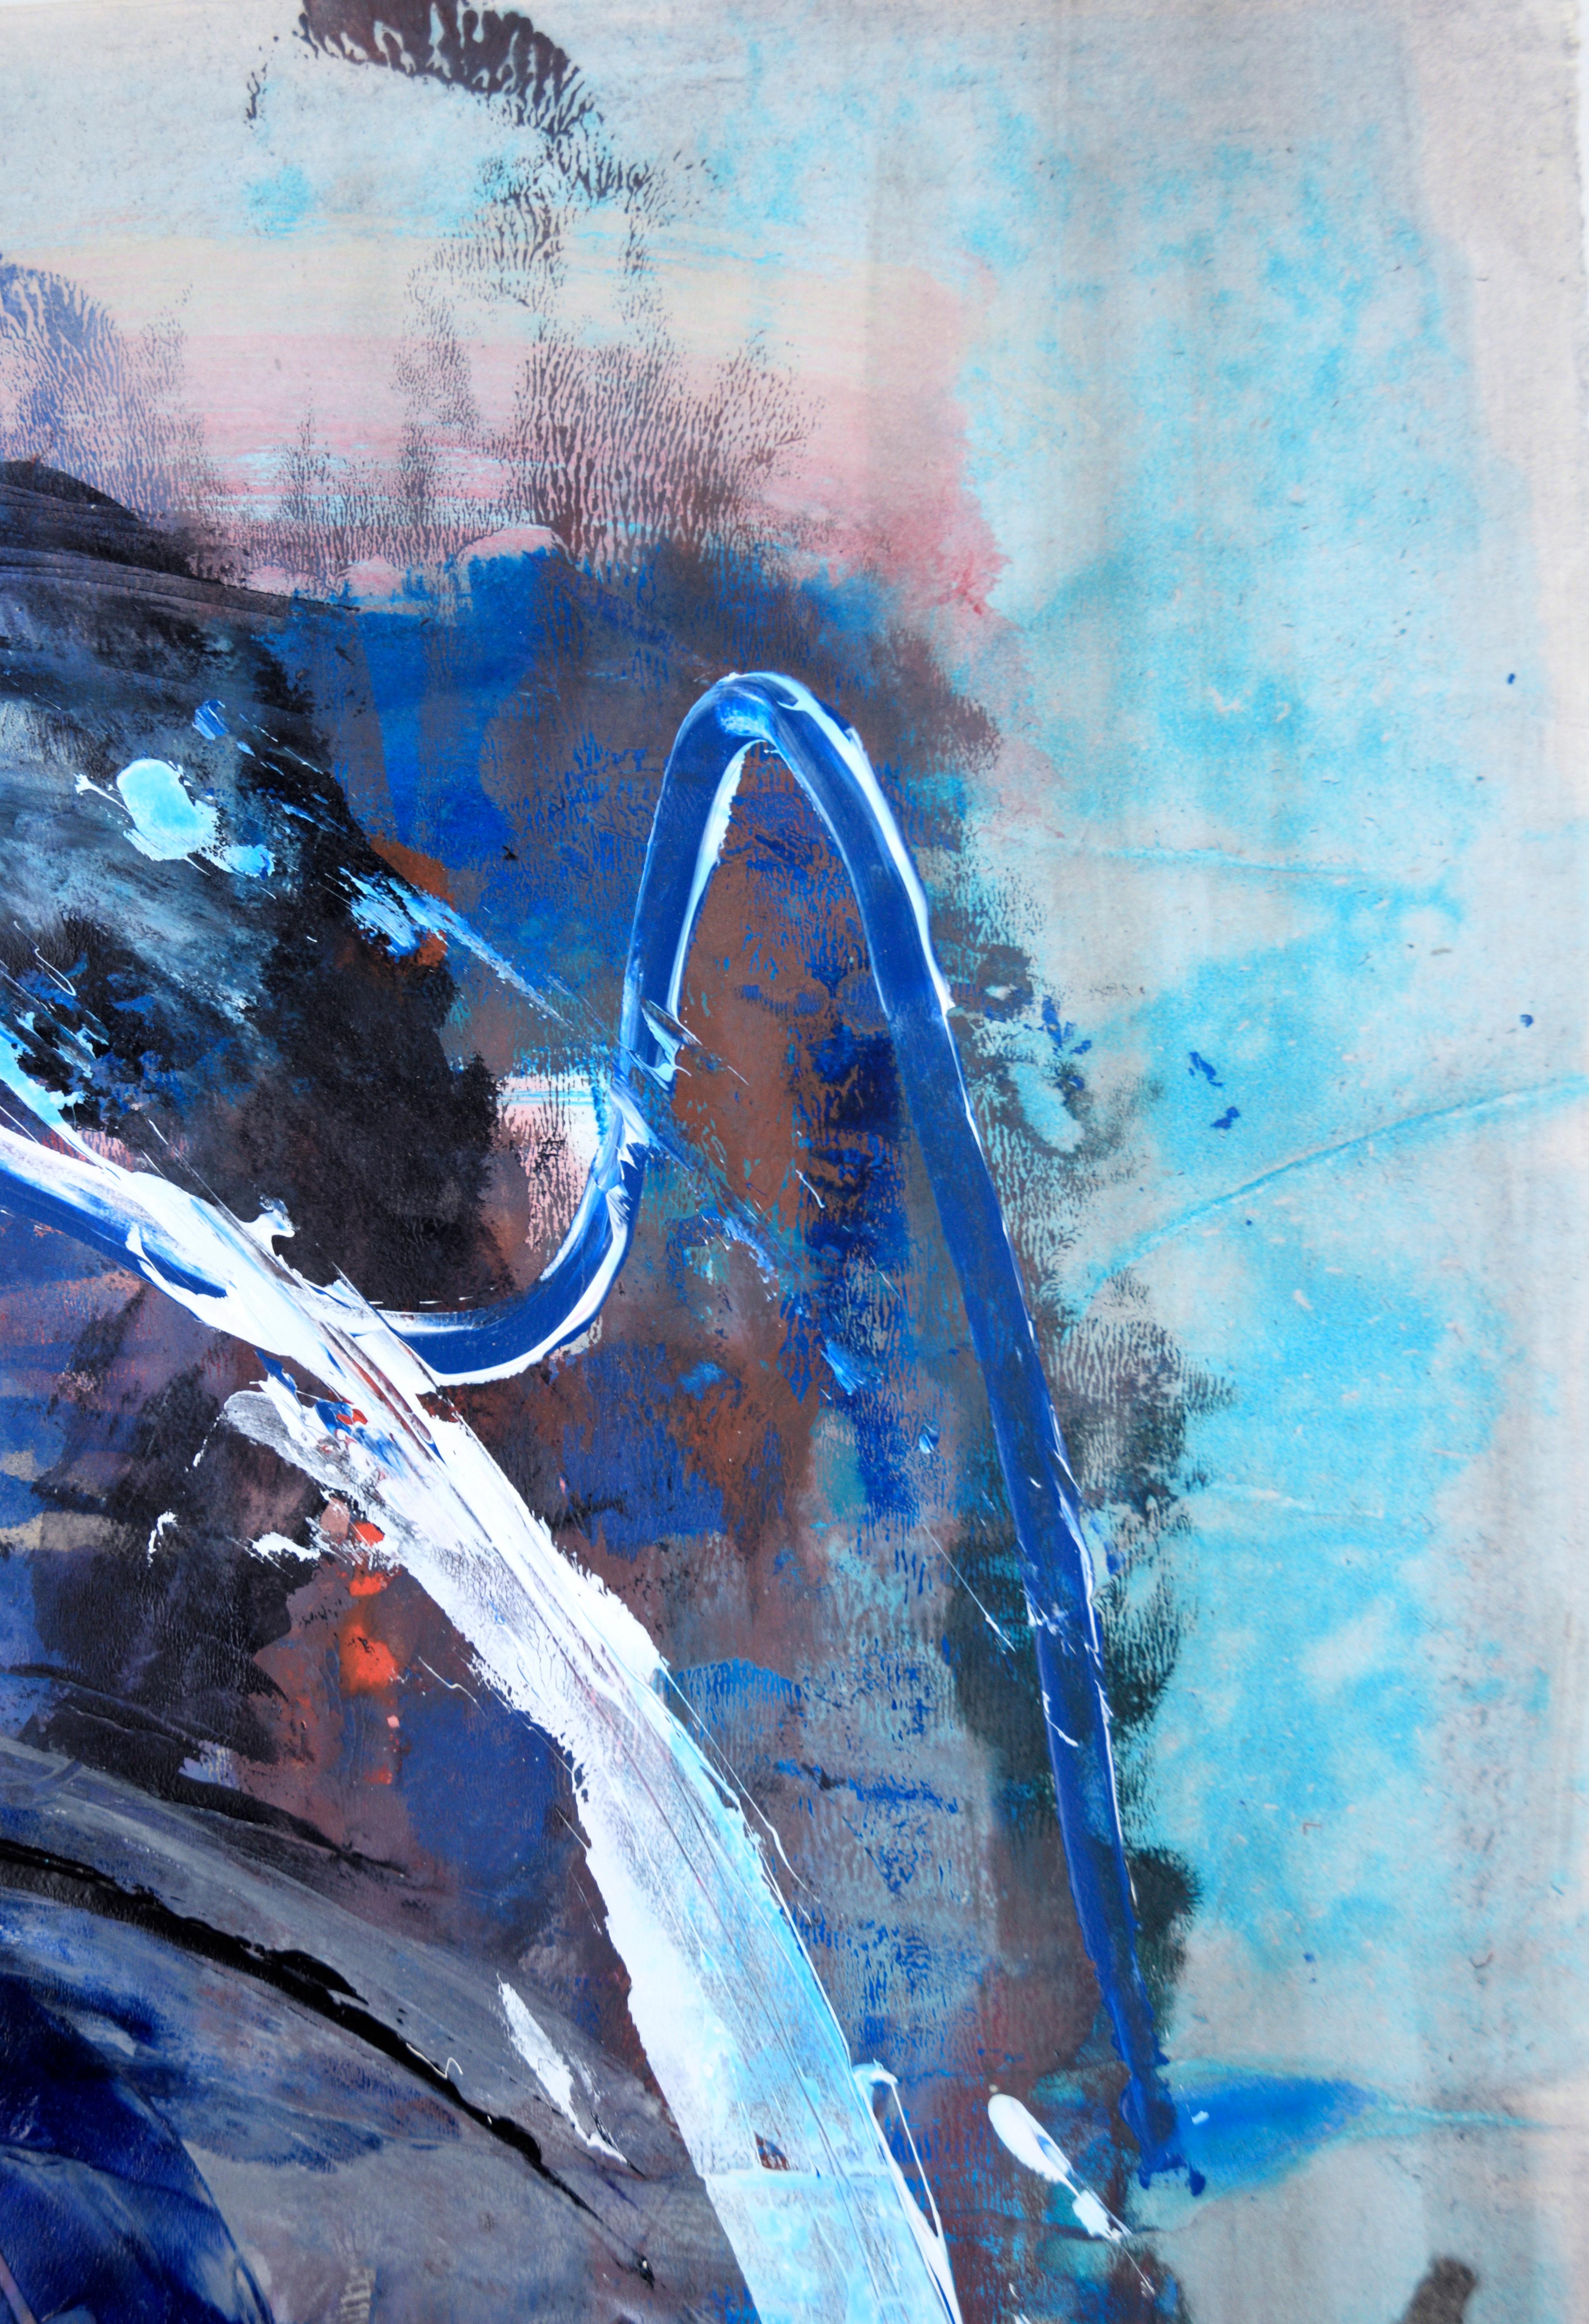 Ein Fall von Blues - Abstrakter Expressionismus 

Ein abstraktes expressionistisches Gemälde in leuchtenden Blautönen, das in mehreren Schichten und Farben schwimmt und ein Werk schafft, das sich durch Tiefe und Komplexität auszeichnet. Kunstwerk